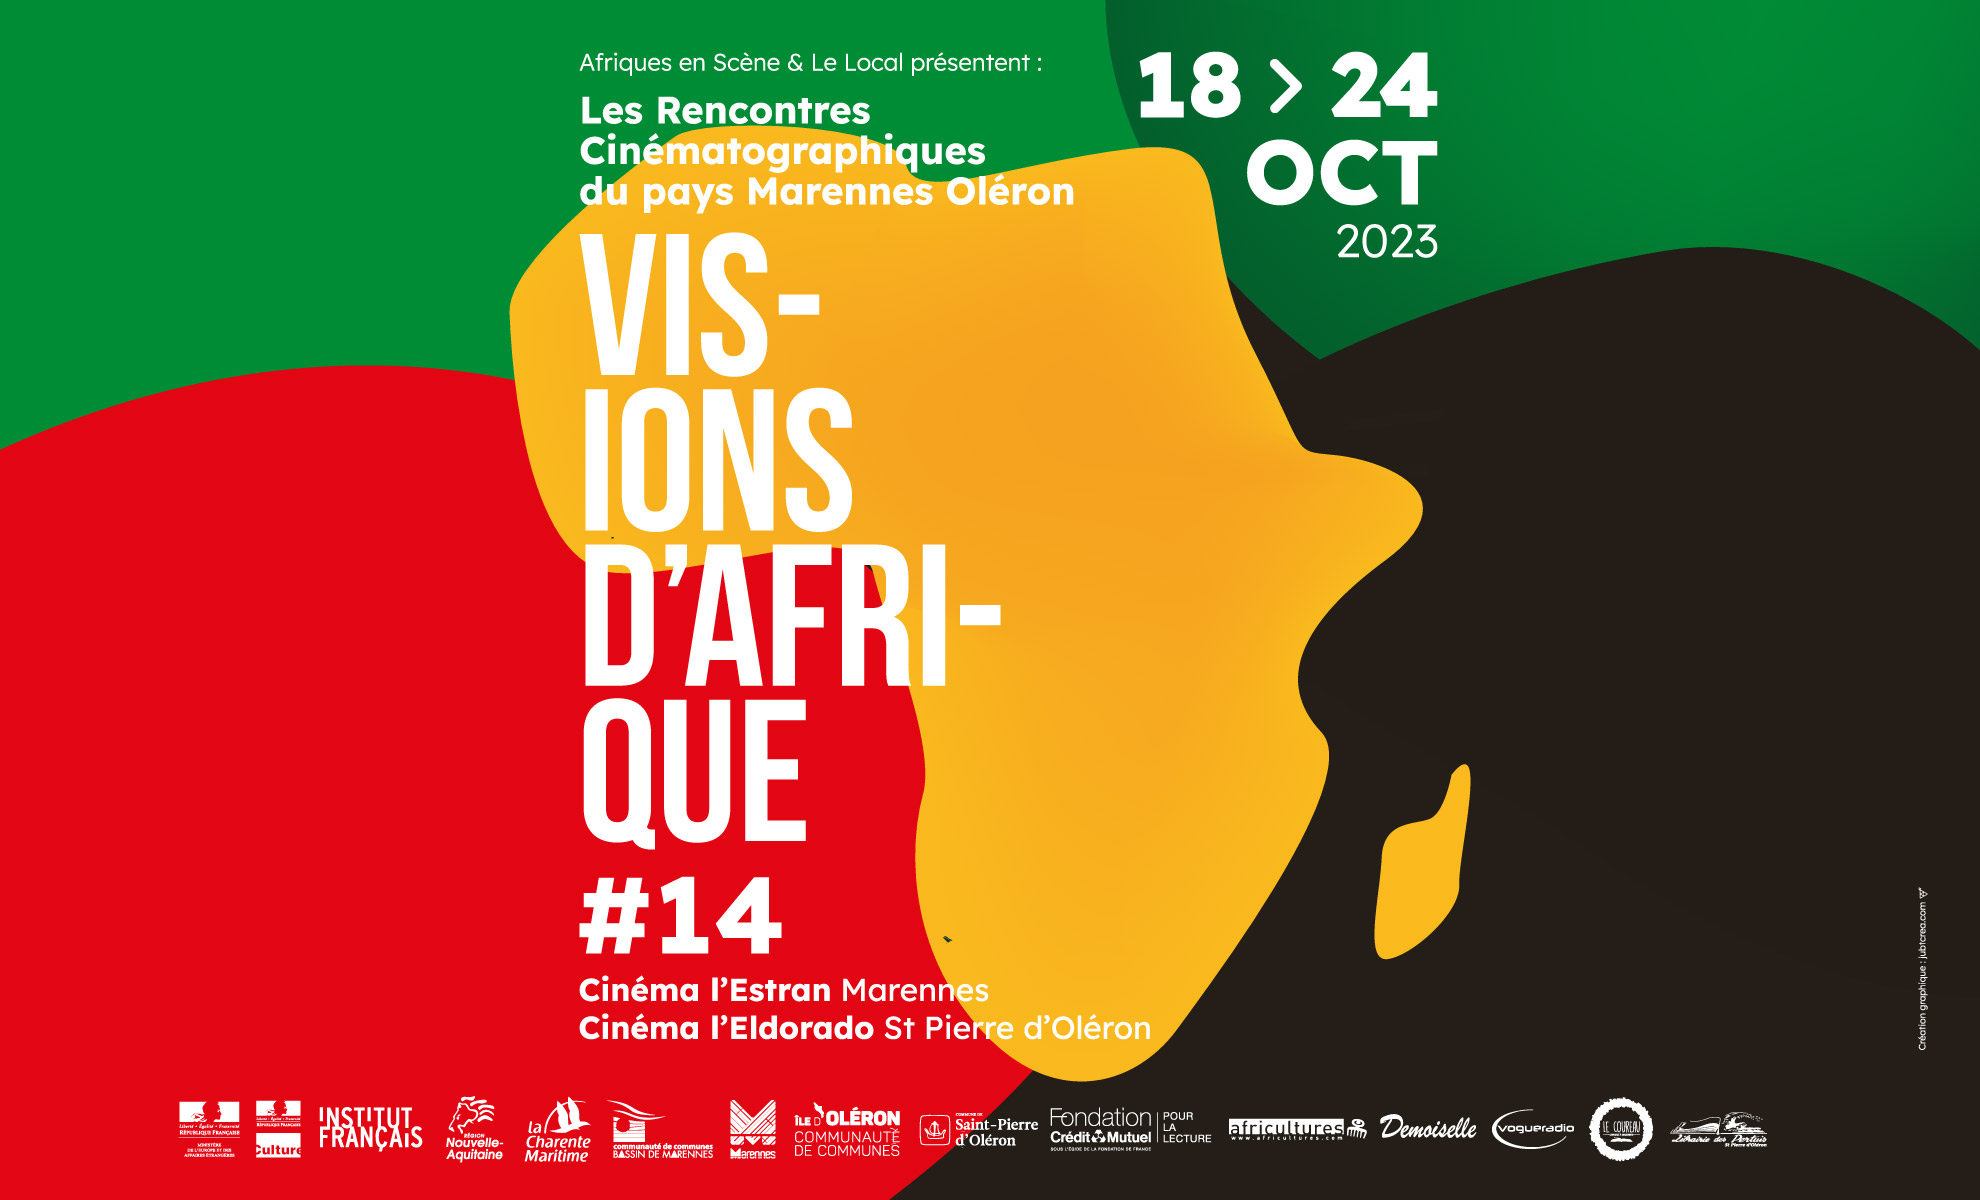 14e édition des Rencontres Cinématographiques du Pays Marennes Oléron - VISIONS D'AFRIQUE - Du 18 au 24 octobre 2023 - Cinémas l'Eldorado (Marennes) et l'Estran (St-Pierre d'Oléron)